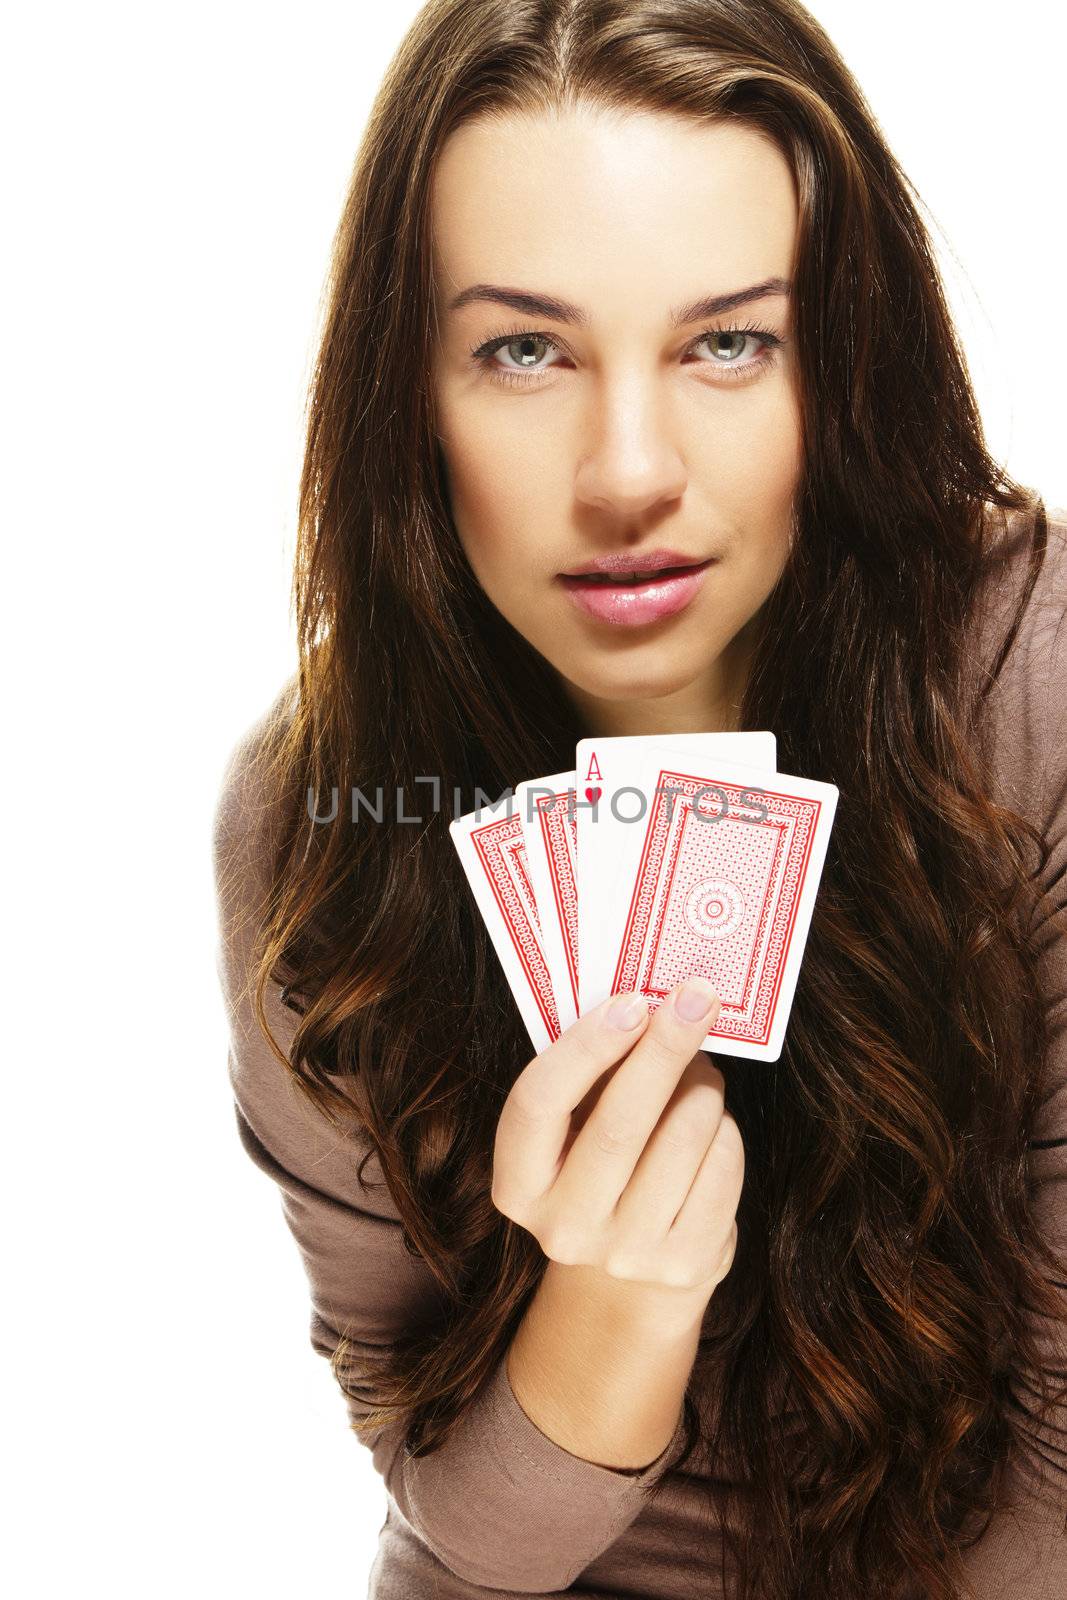 beautiful woman playing poker on white background